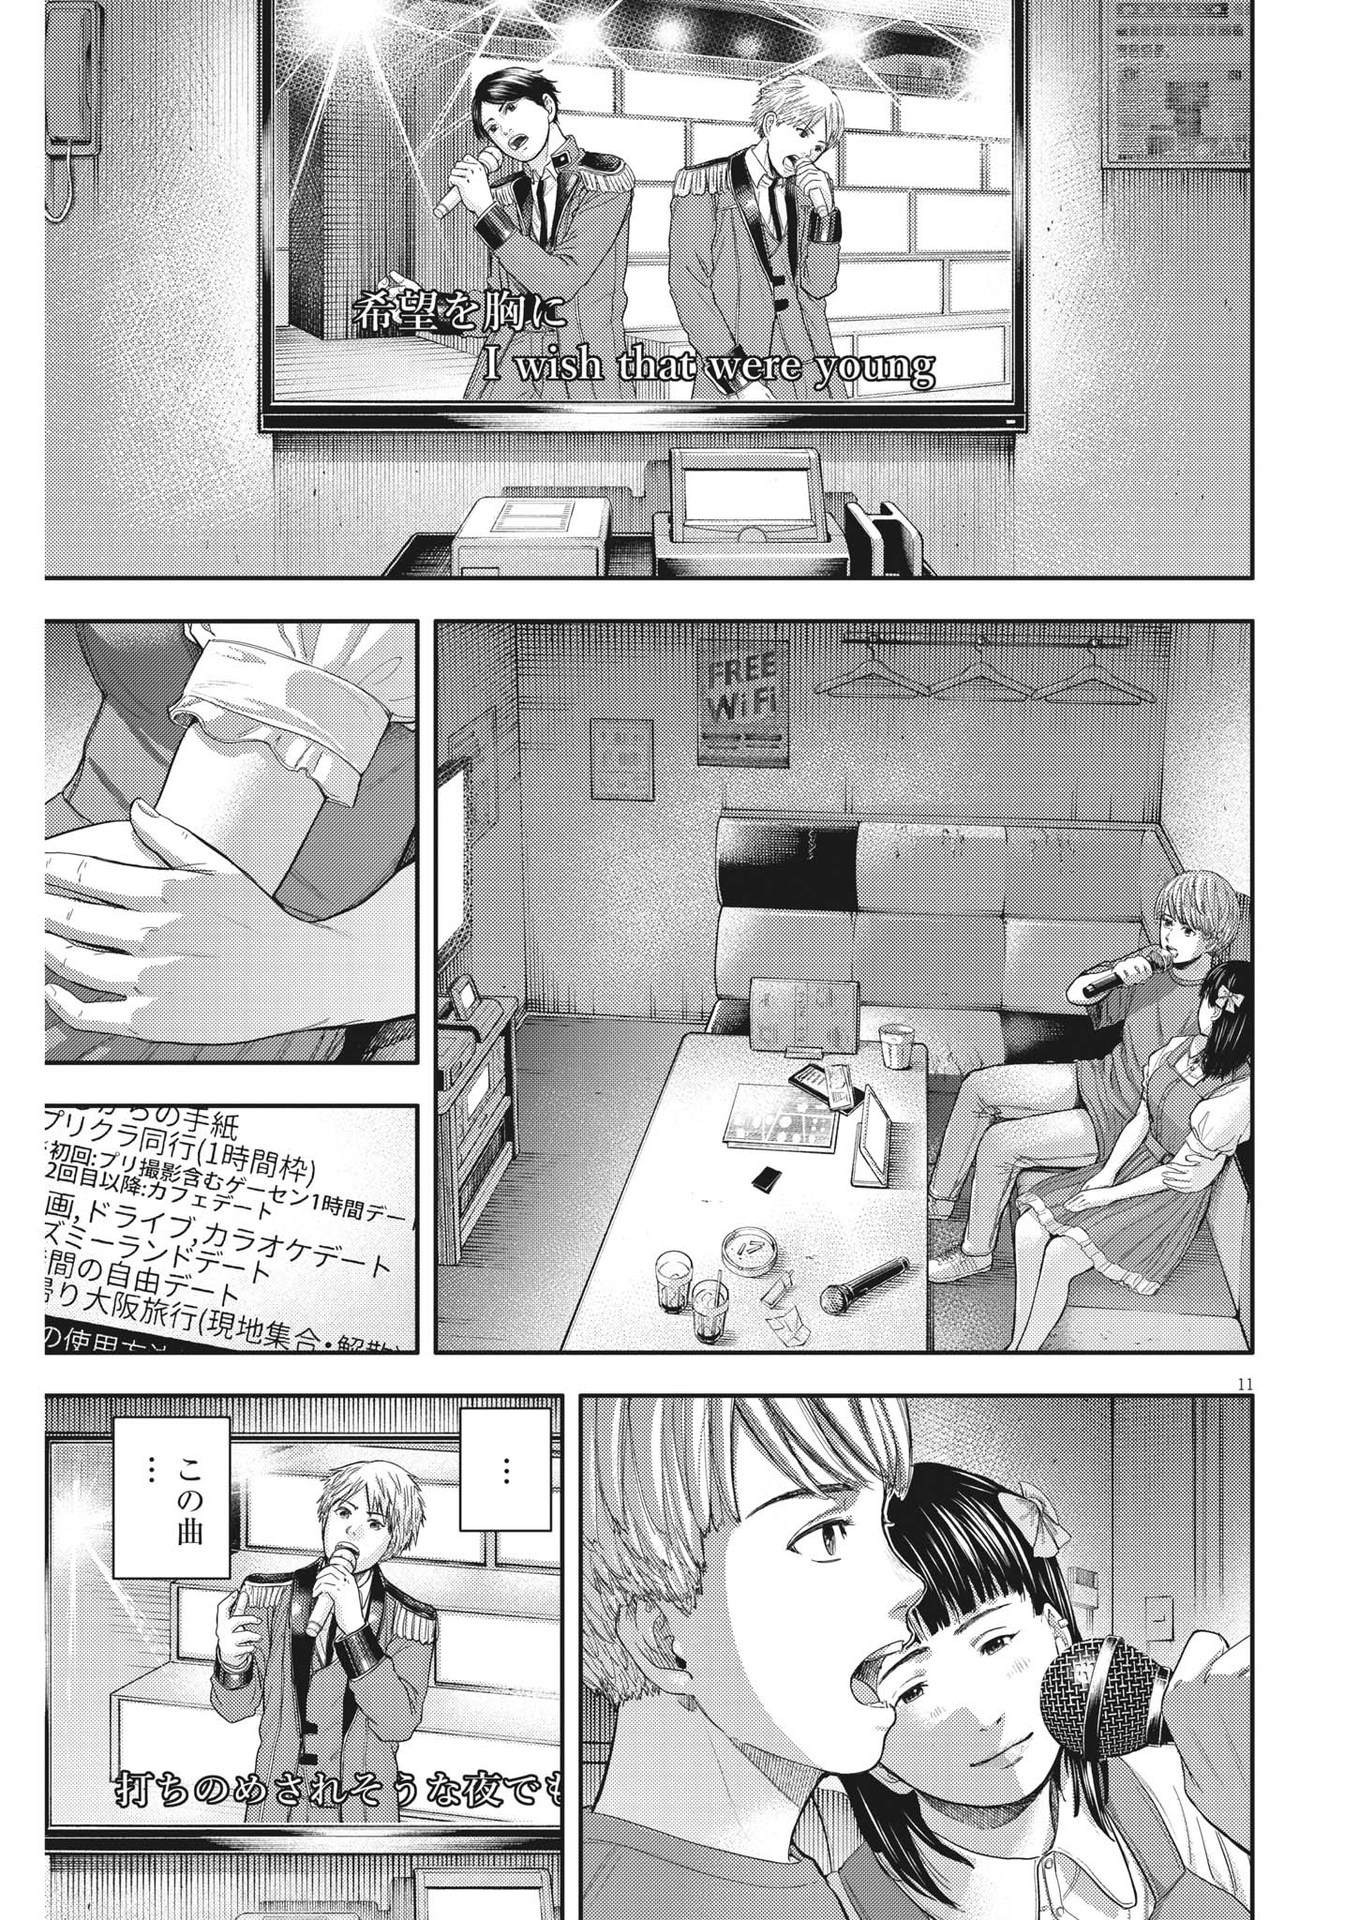 Yumenashi-sensei no Shinroshidou - Chapter 14 - Page 11